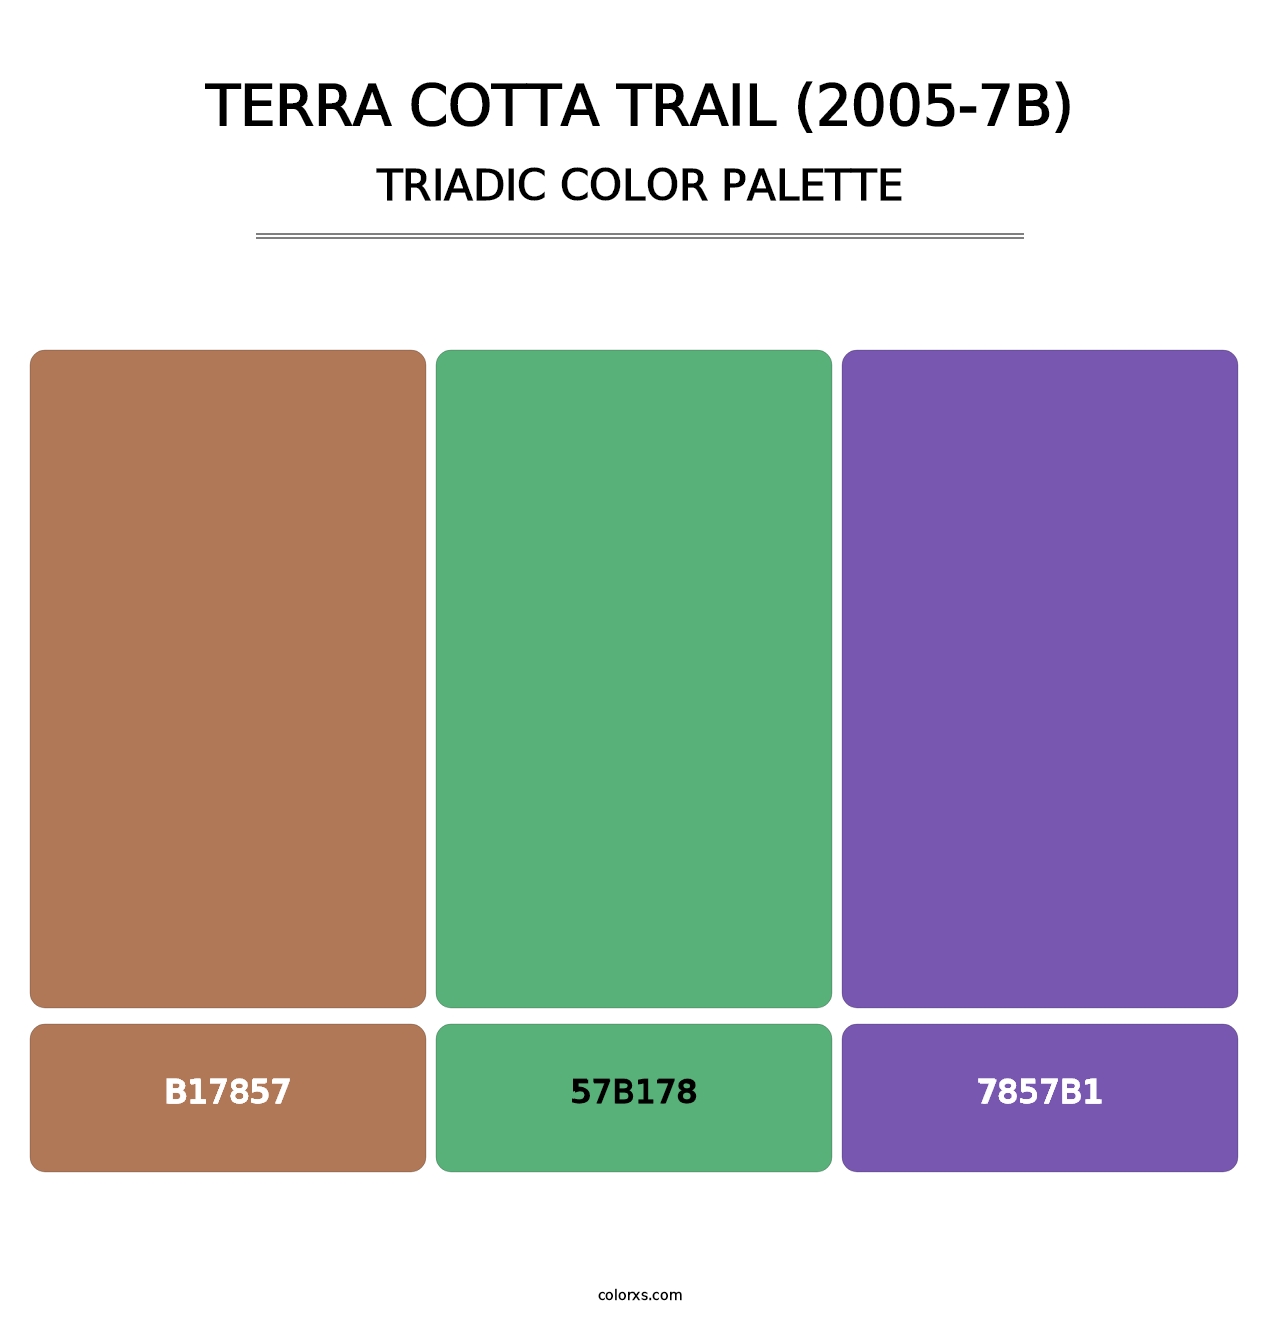 Terra Cotta Trail (2005-7B) - Triadic Color Palette